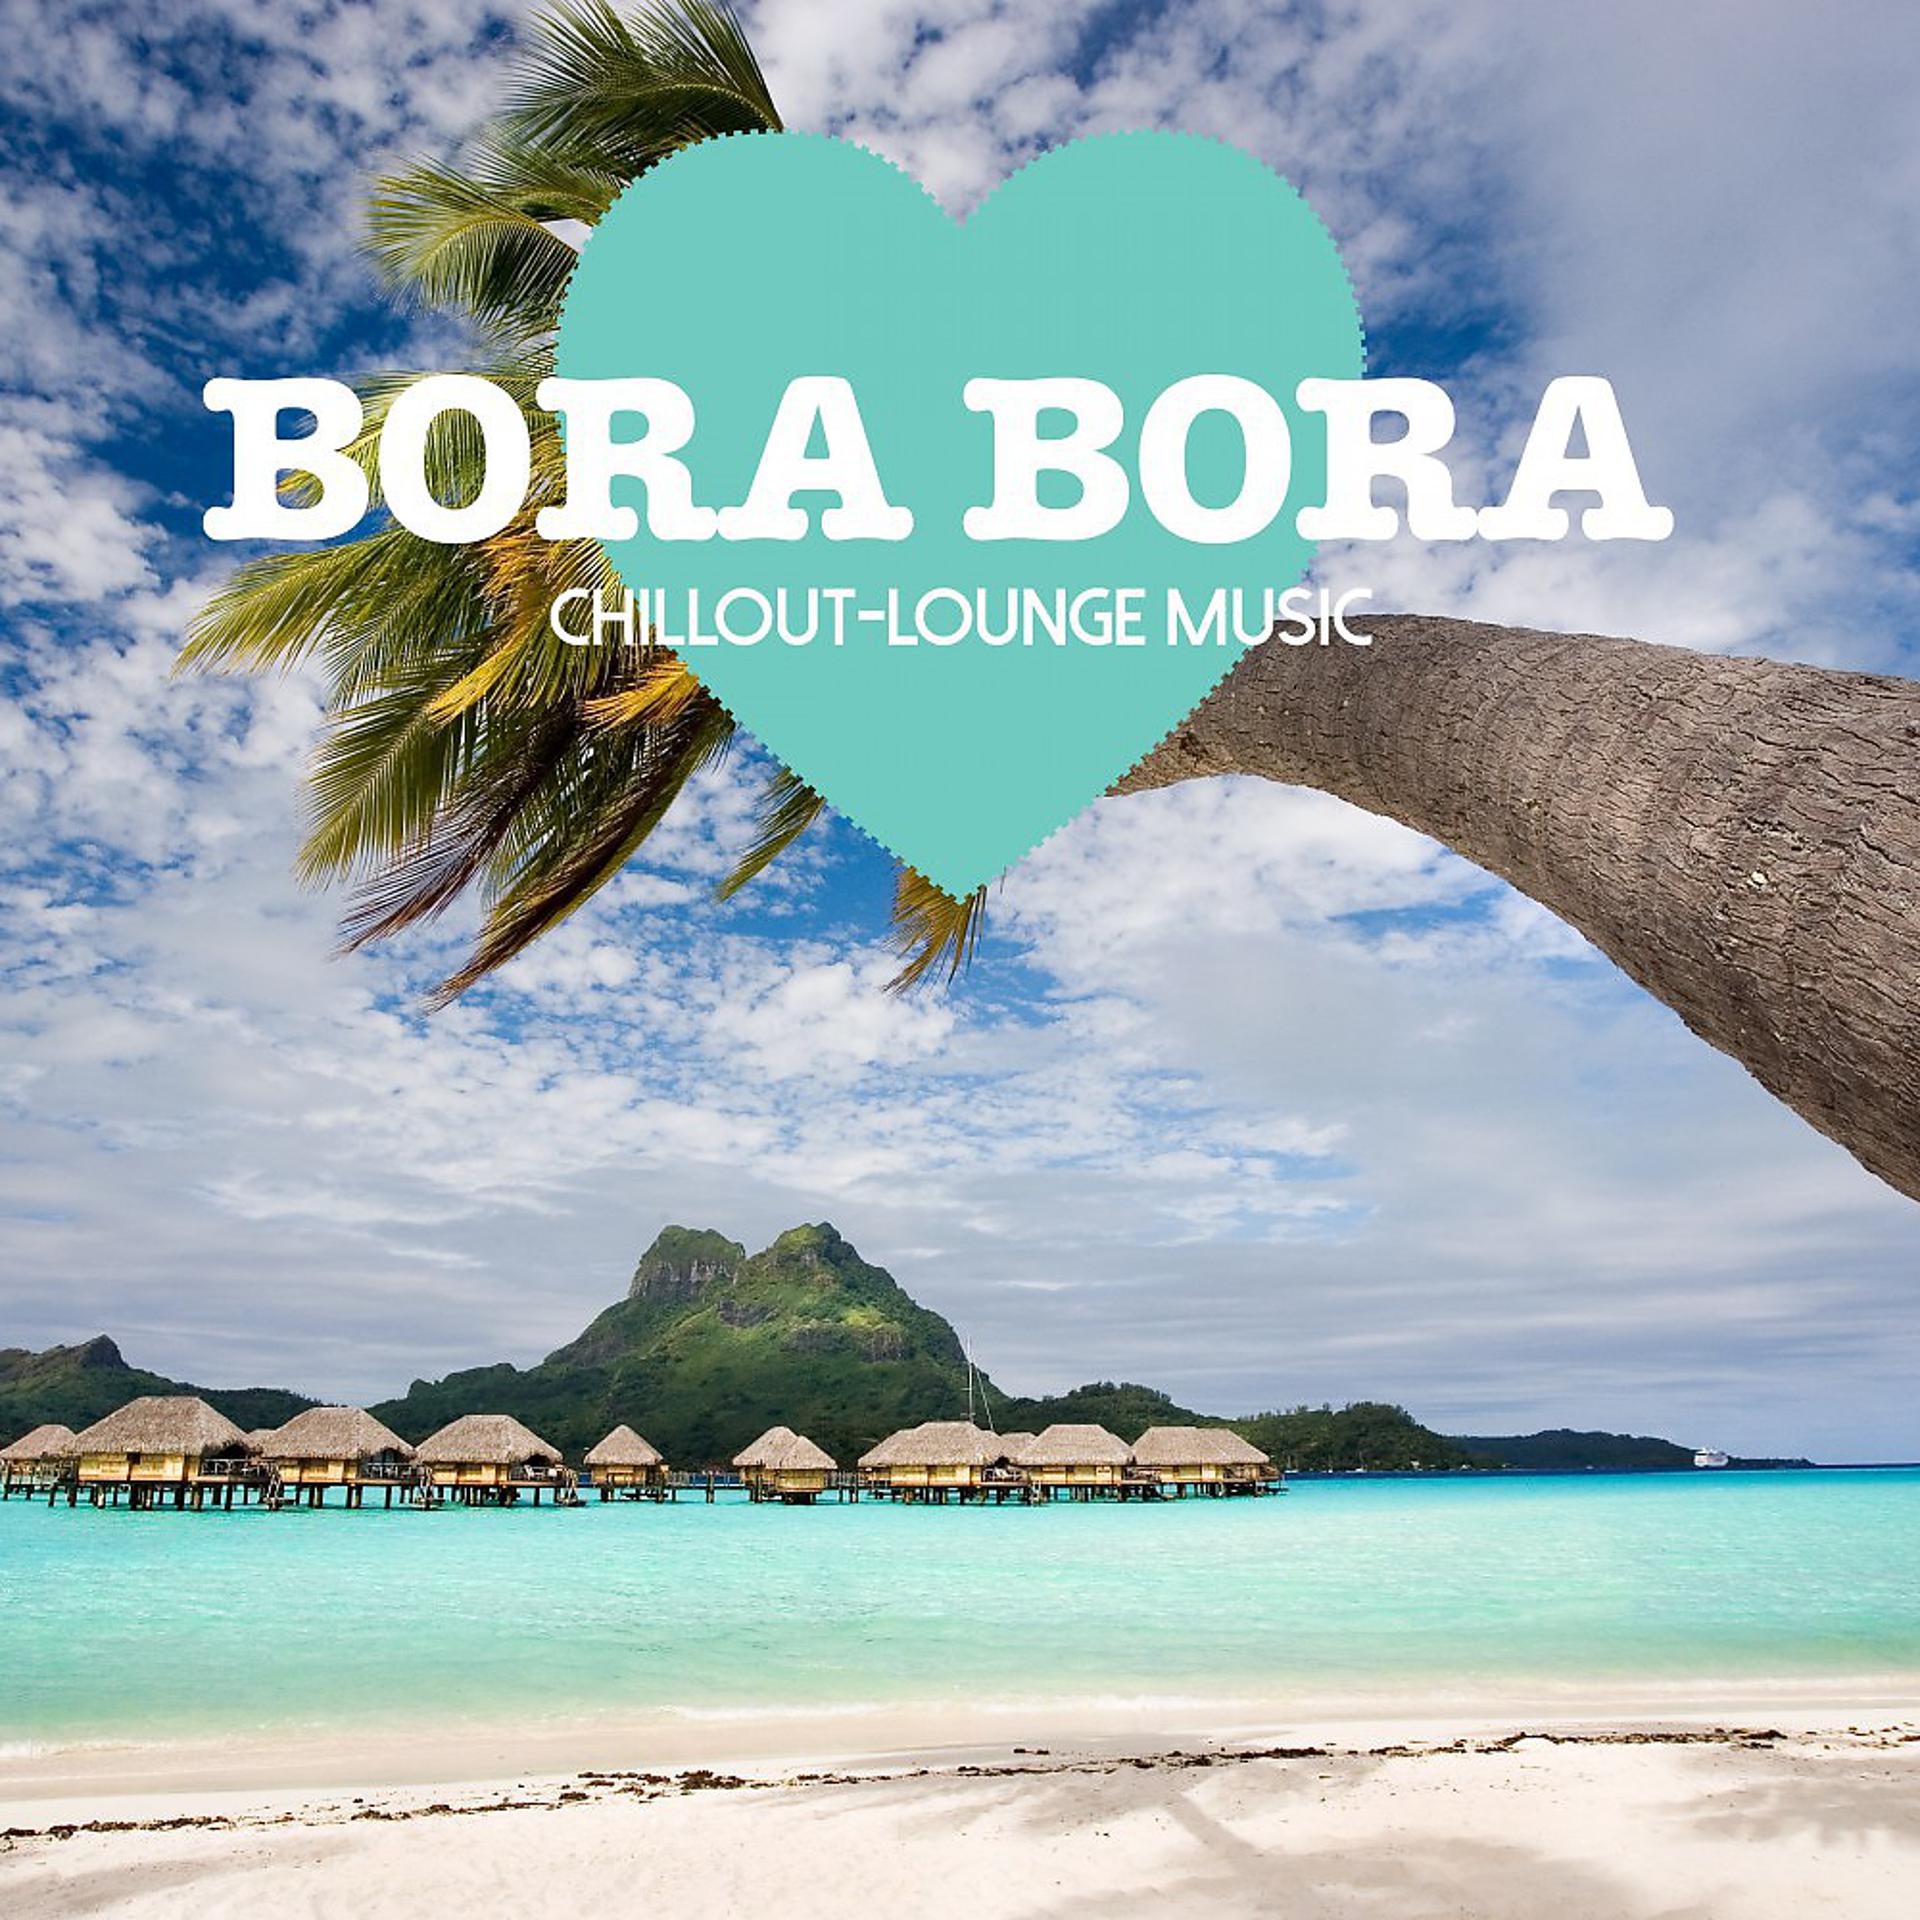 Песня жара на боре боре. Надпись Bora Bora. Боро Боро. Bora Bora картинка с надписью. Bora Bora песня.